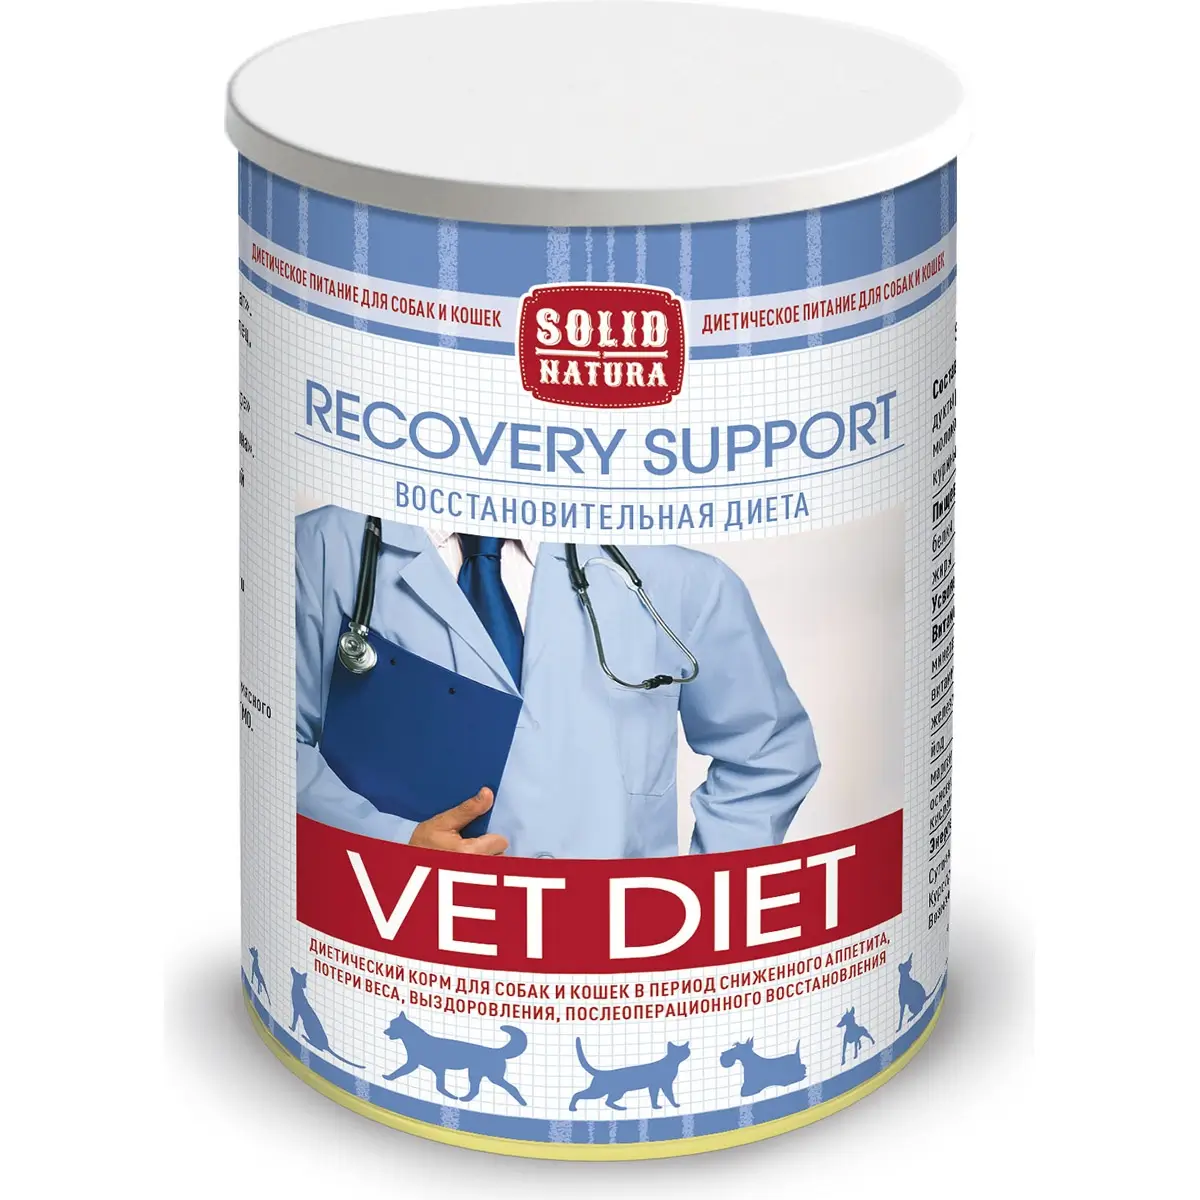 Диетические консервы Solid Natura Vet Diet Recovery Support для собак и кошек (Восстановительная диета, жестяная банка, 340г)